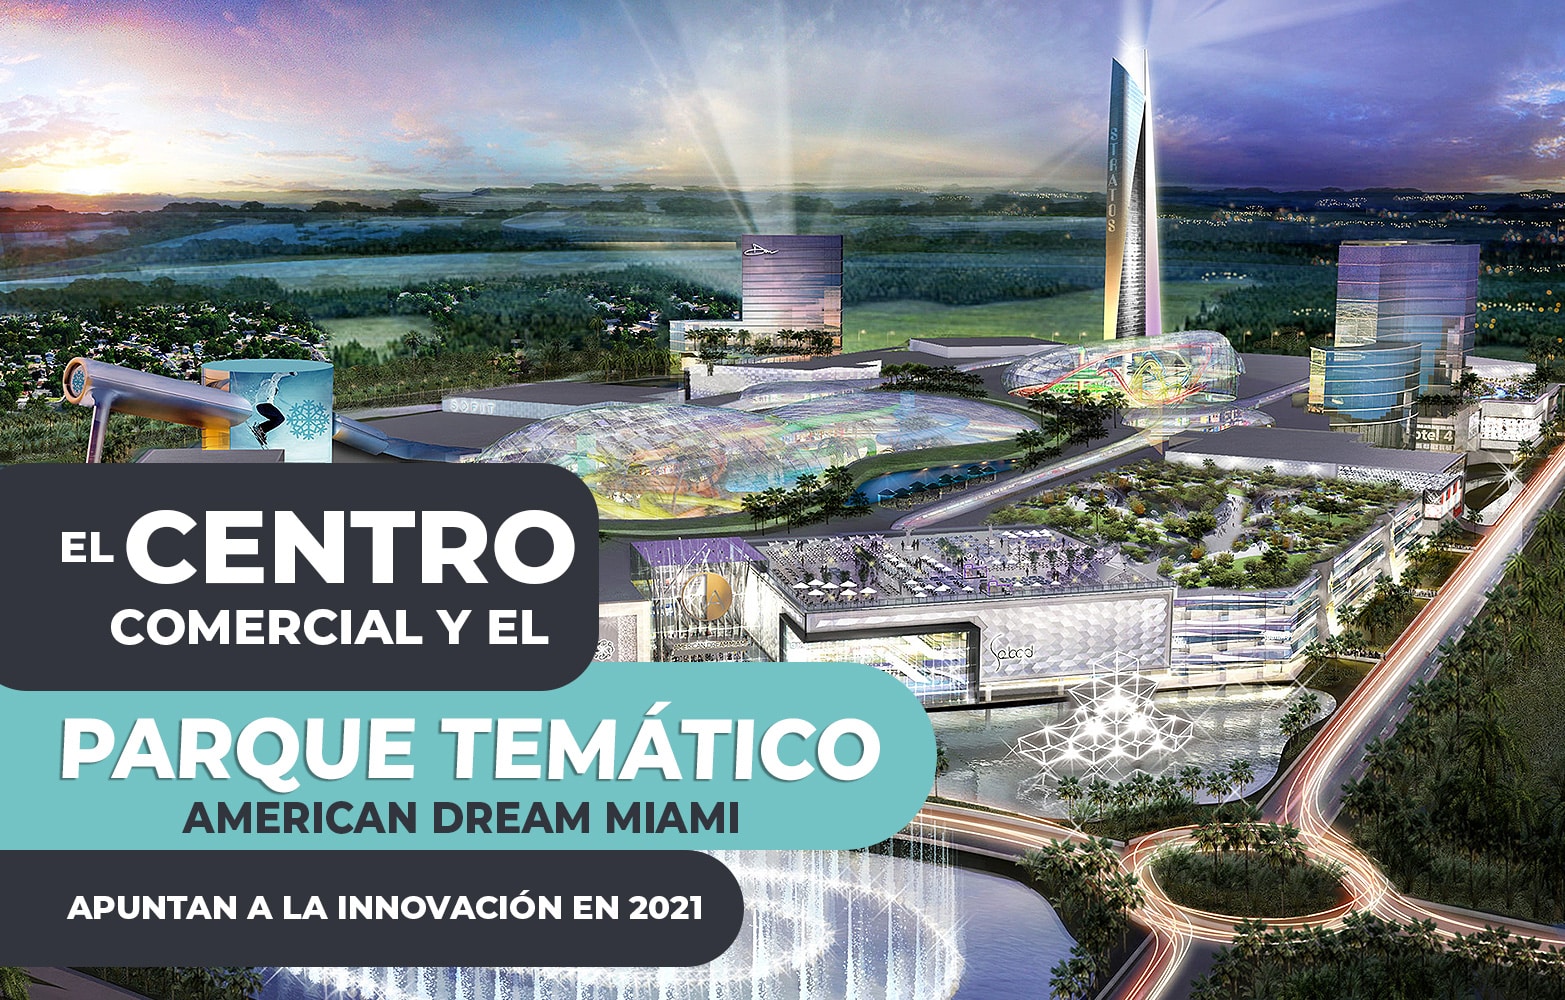 El centro comercial y el parque temático american dream Miami apuntan a la innovación en  2021